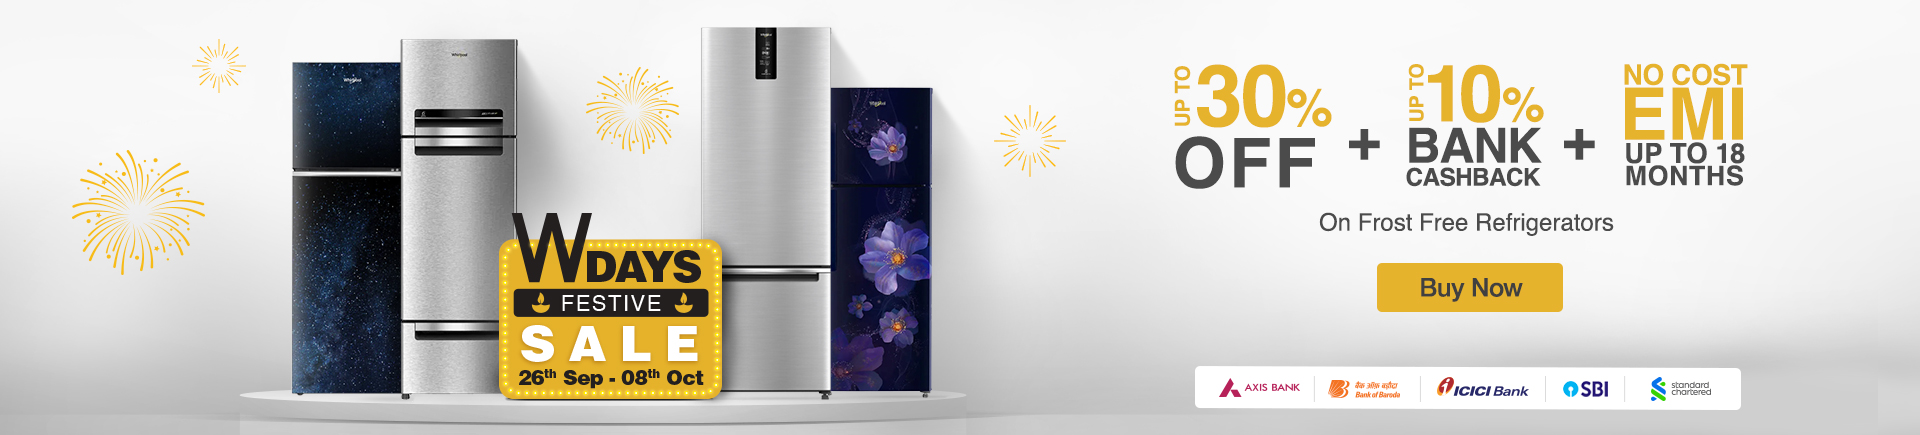 Buy Double Door Refrigeratorsonline at best prices and offers